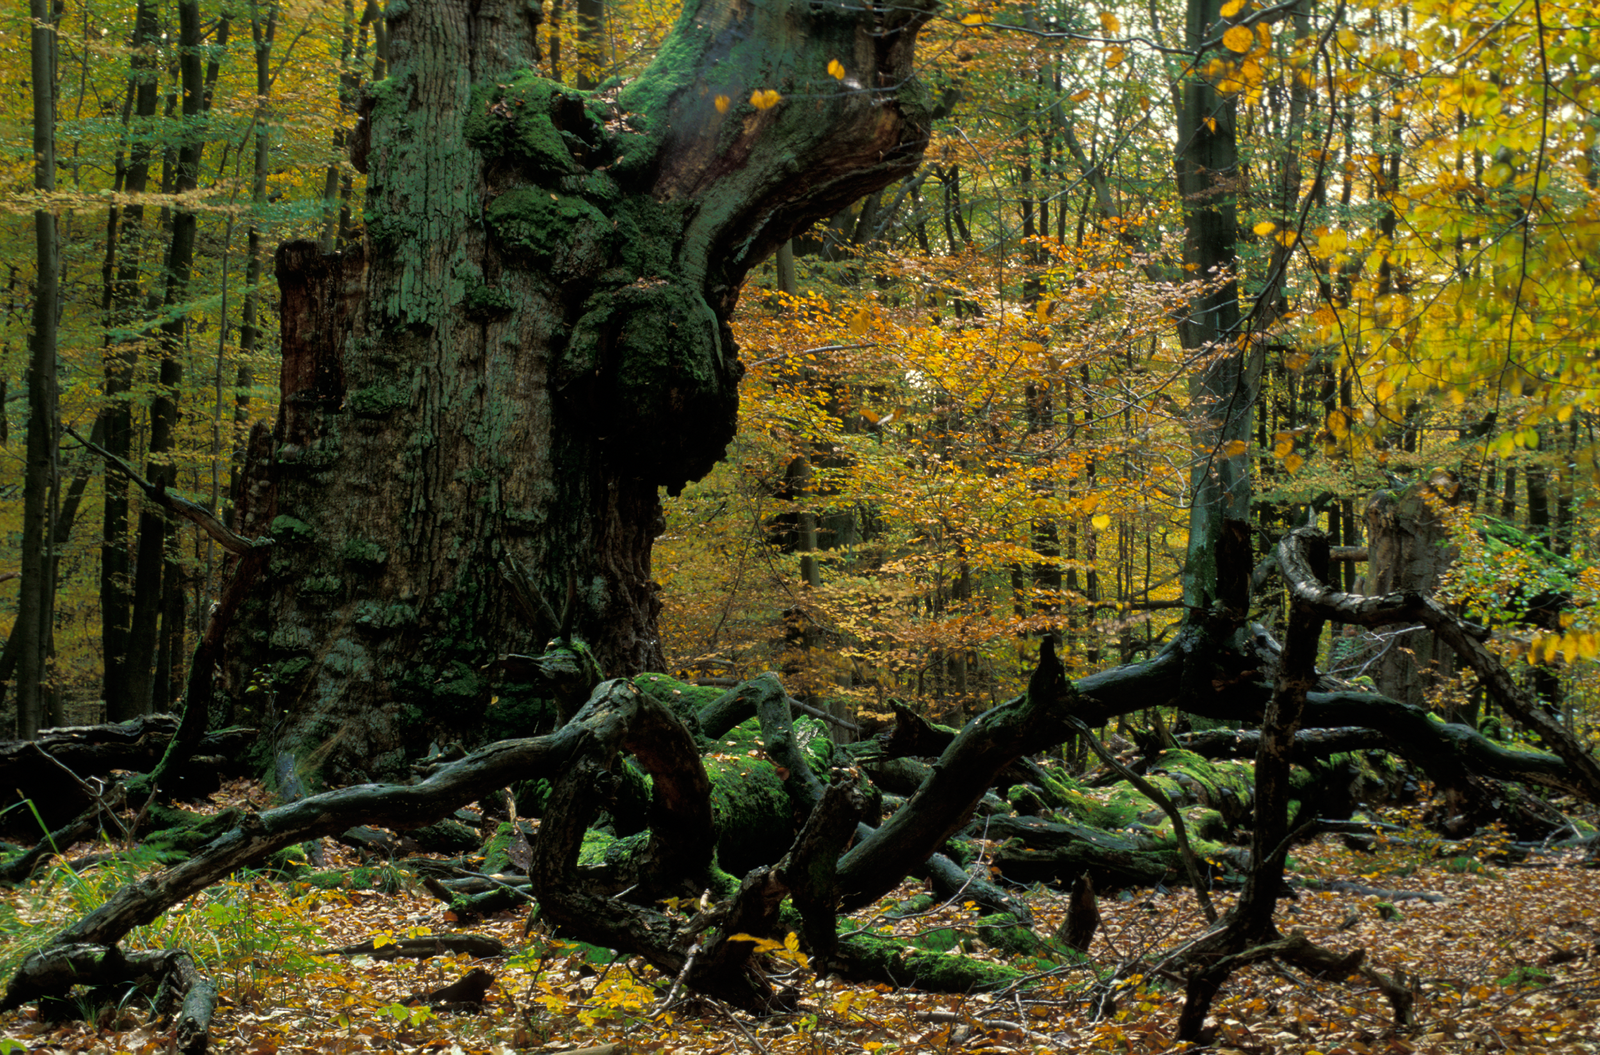 Wunderwelt Wald: 13 überraschende Fakten über Wälder in Deutschland